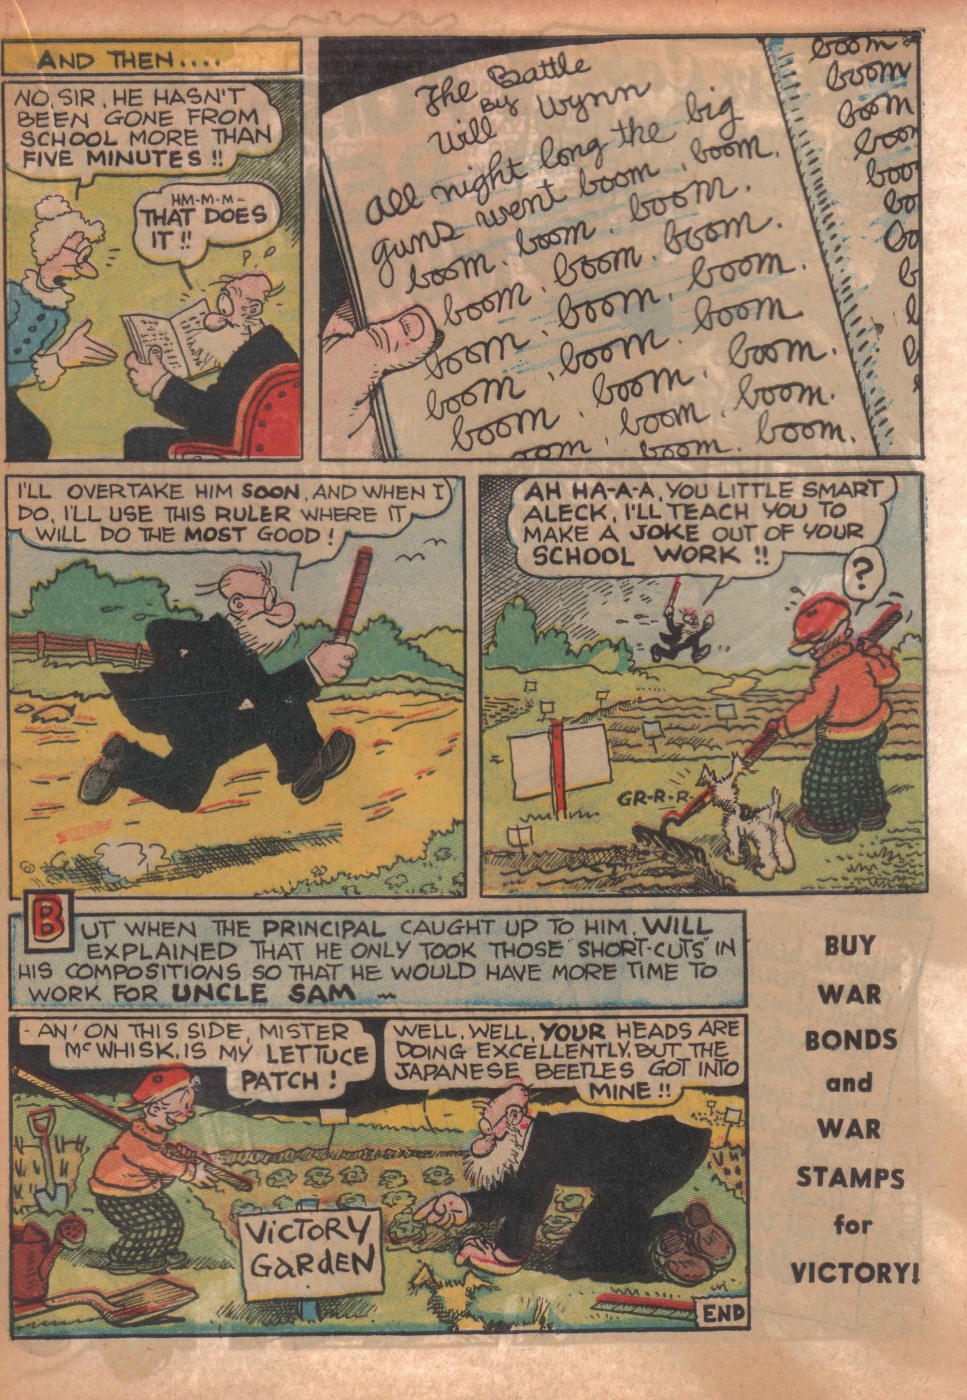 Super Dooper Funny Comics (17)